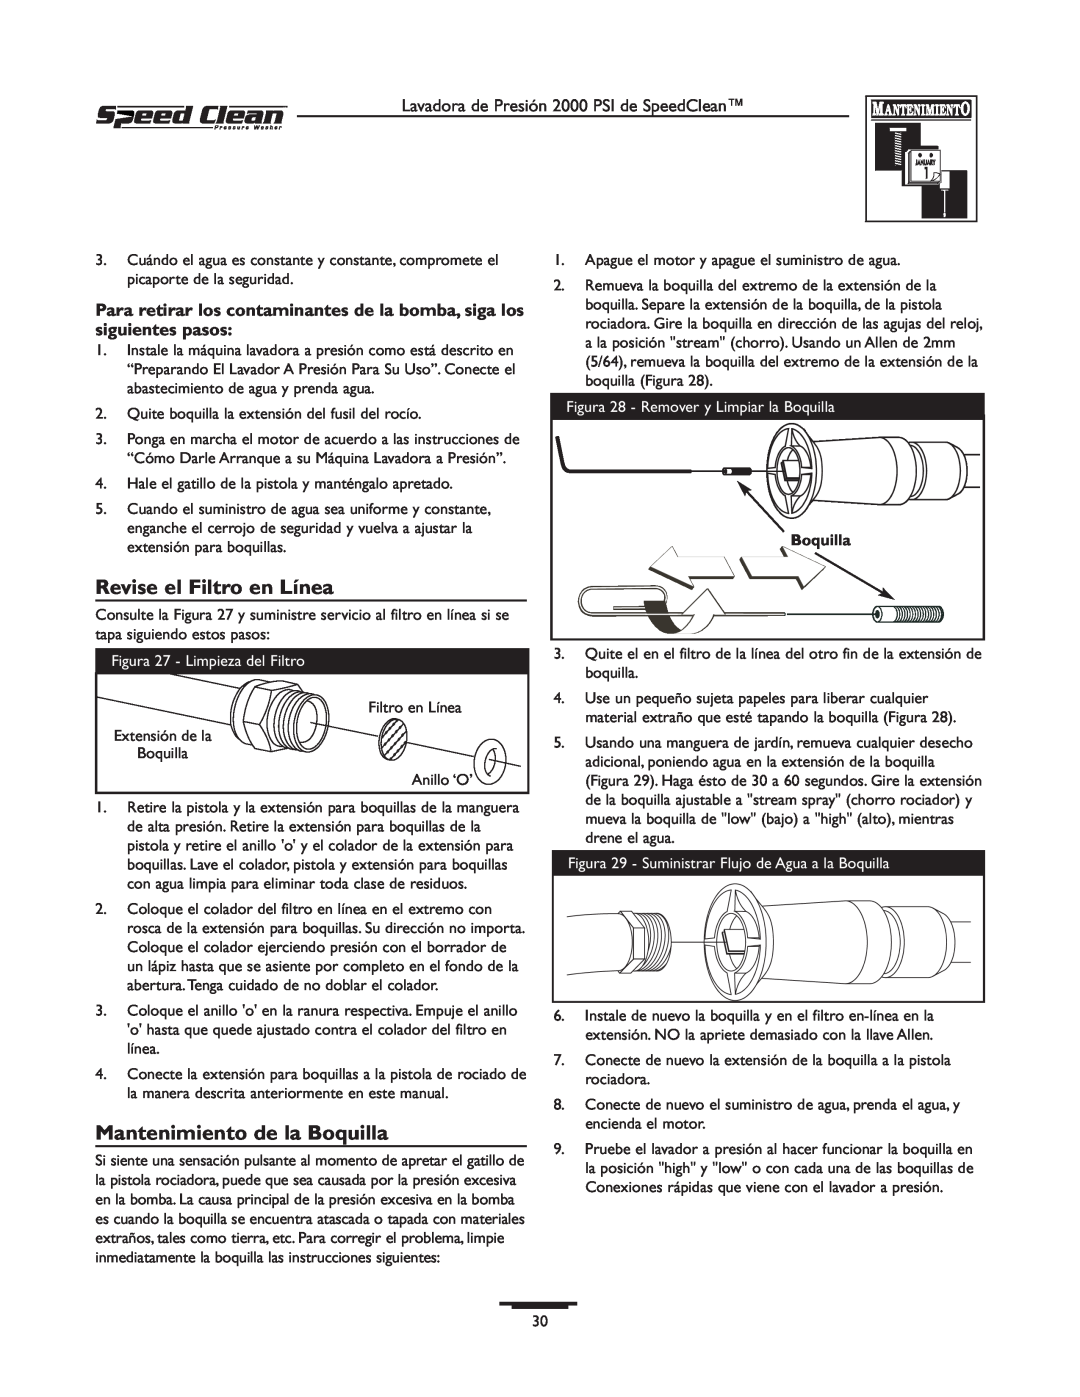 Briggs & Stratton 020211-0 owner manual Revise el Filtro en Línea, Mantenimiento de la Boquilla 